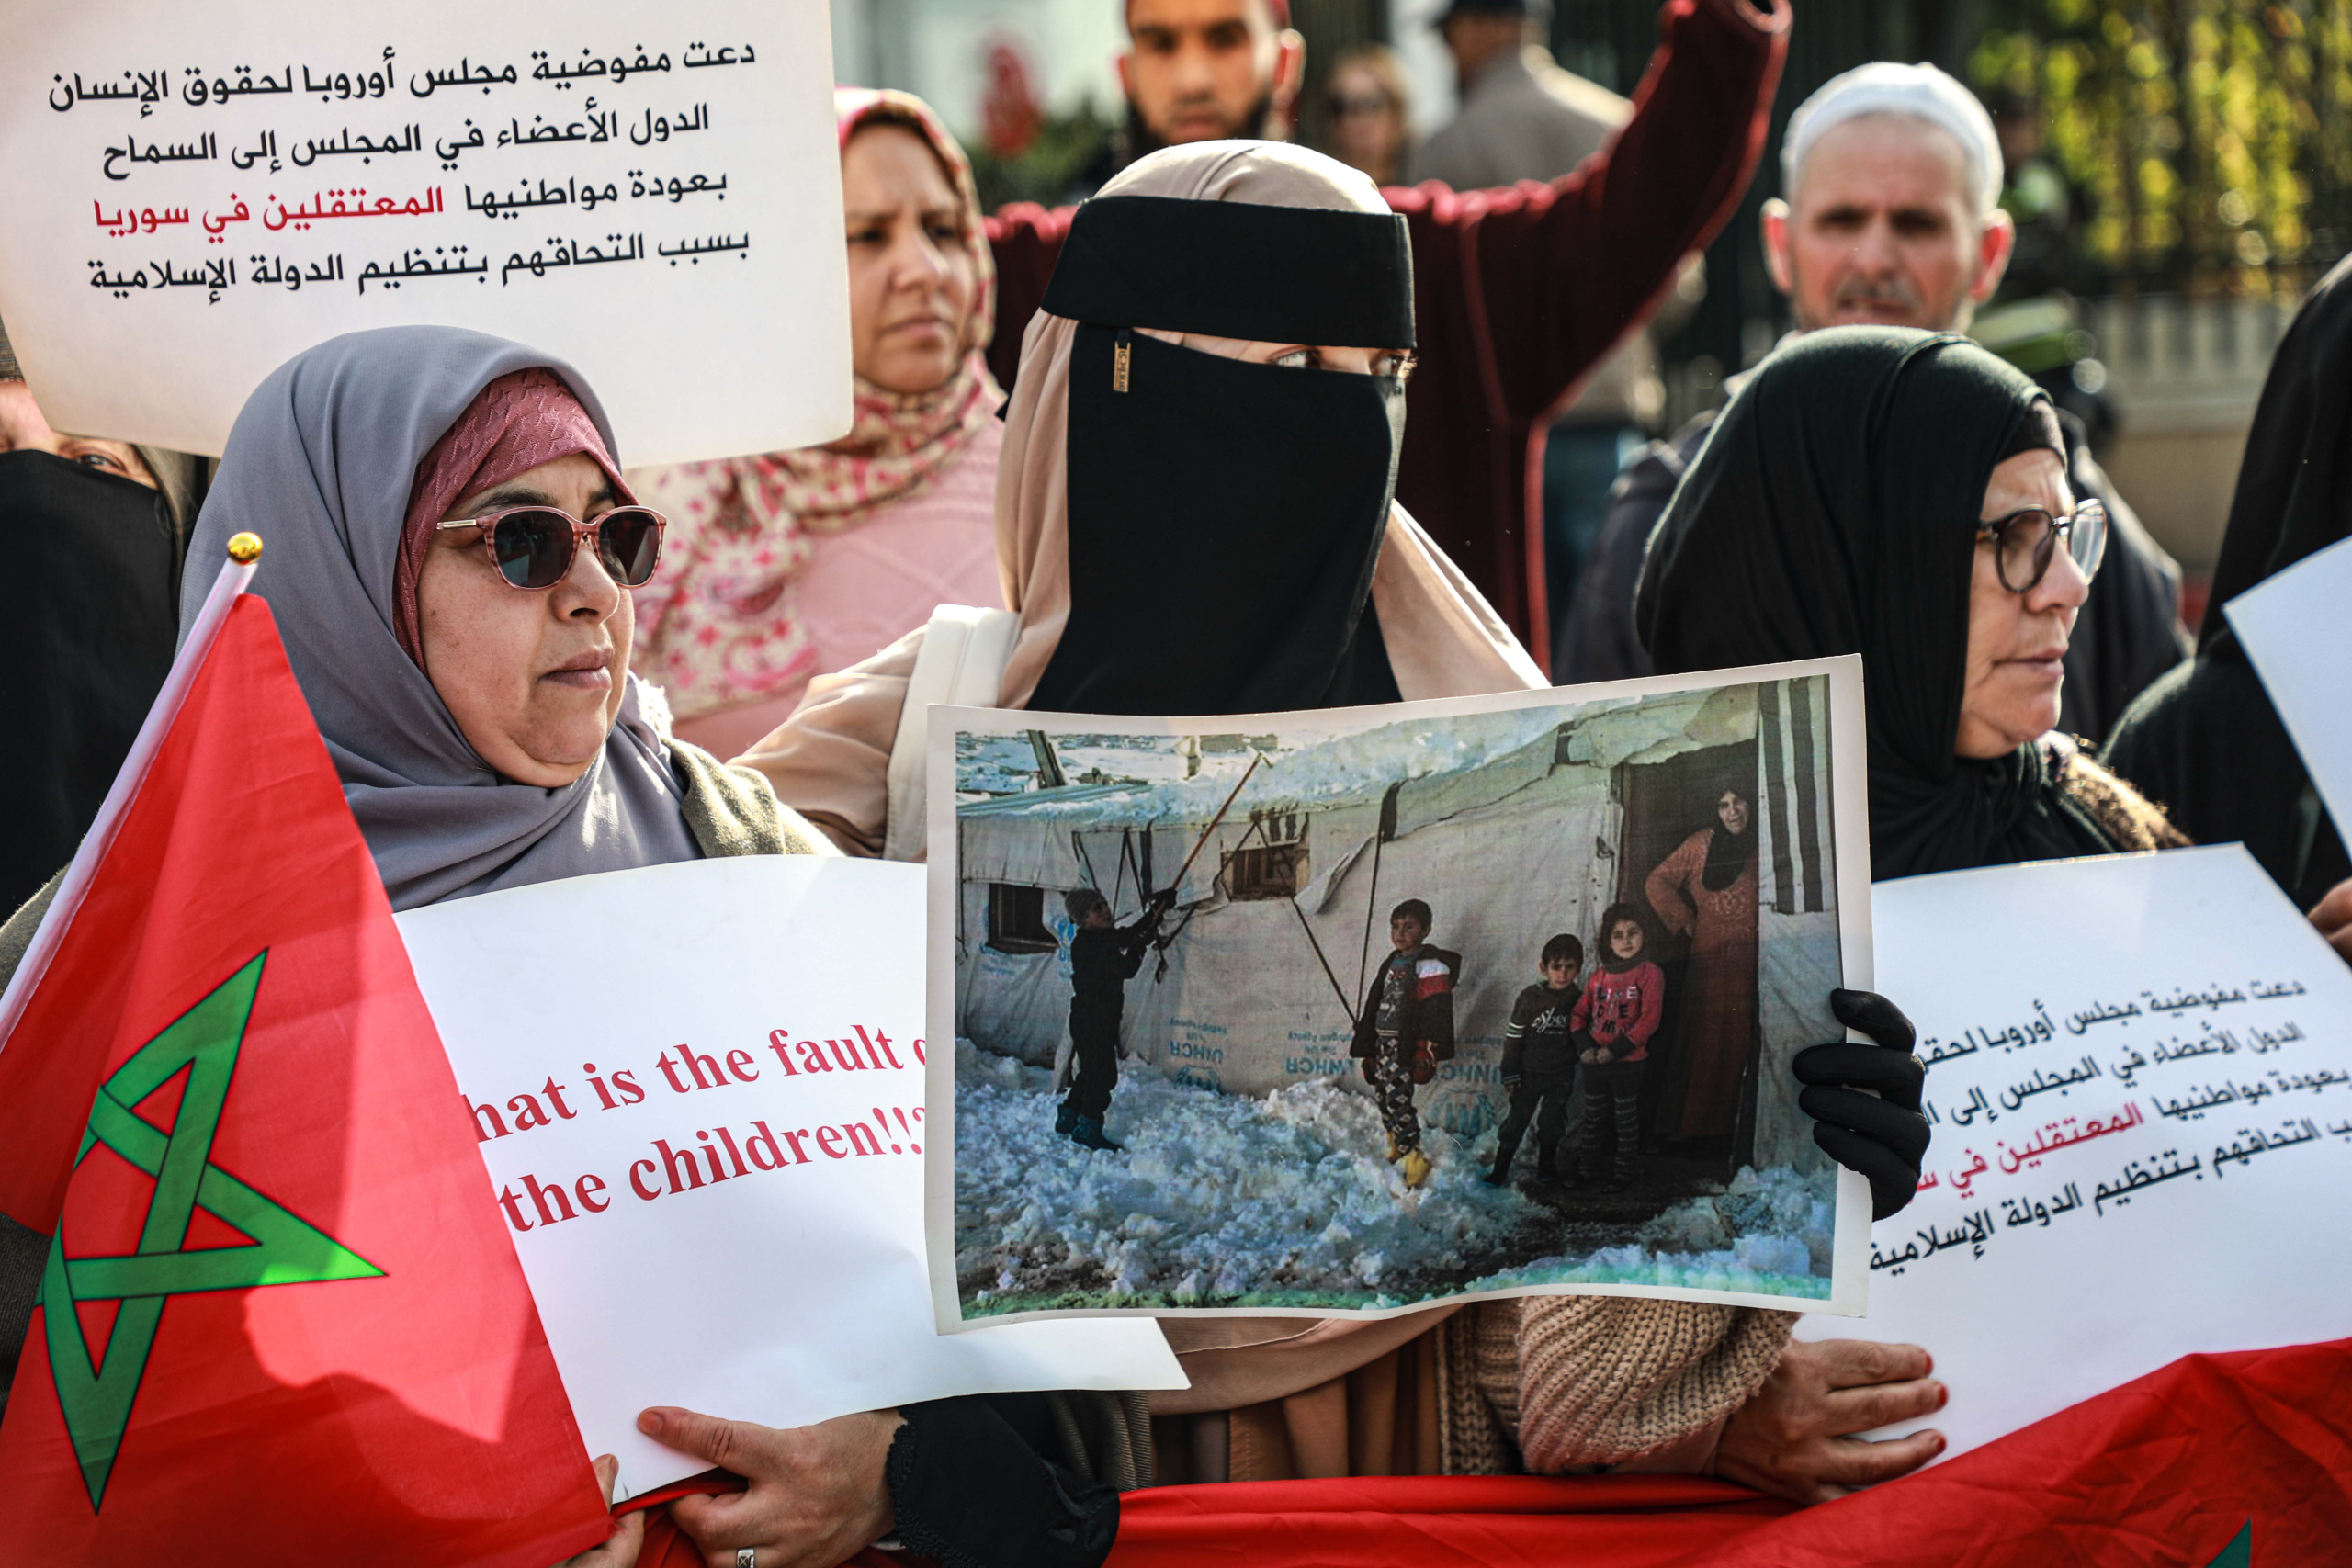 انقطاع الأخبار واعتقالات لأسباب مجهولة تدفع عائلات مغاربة داعش للاحتجاج